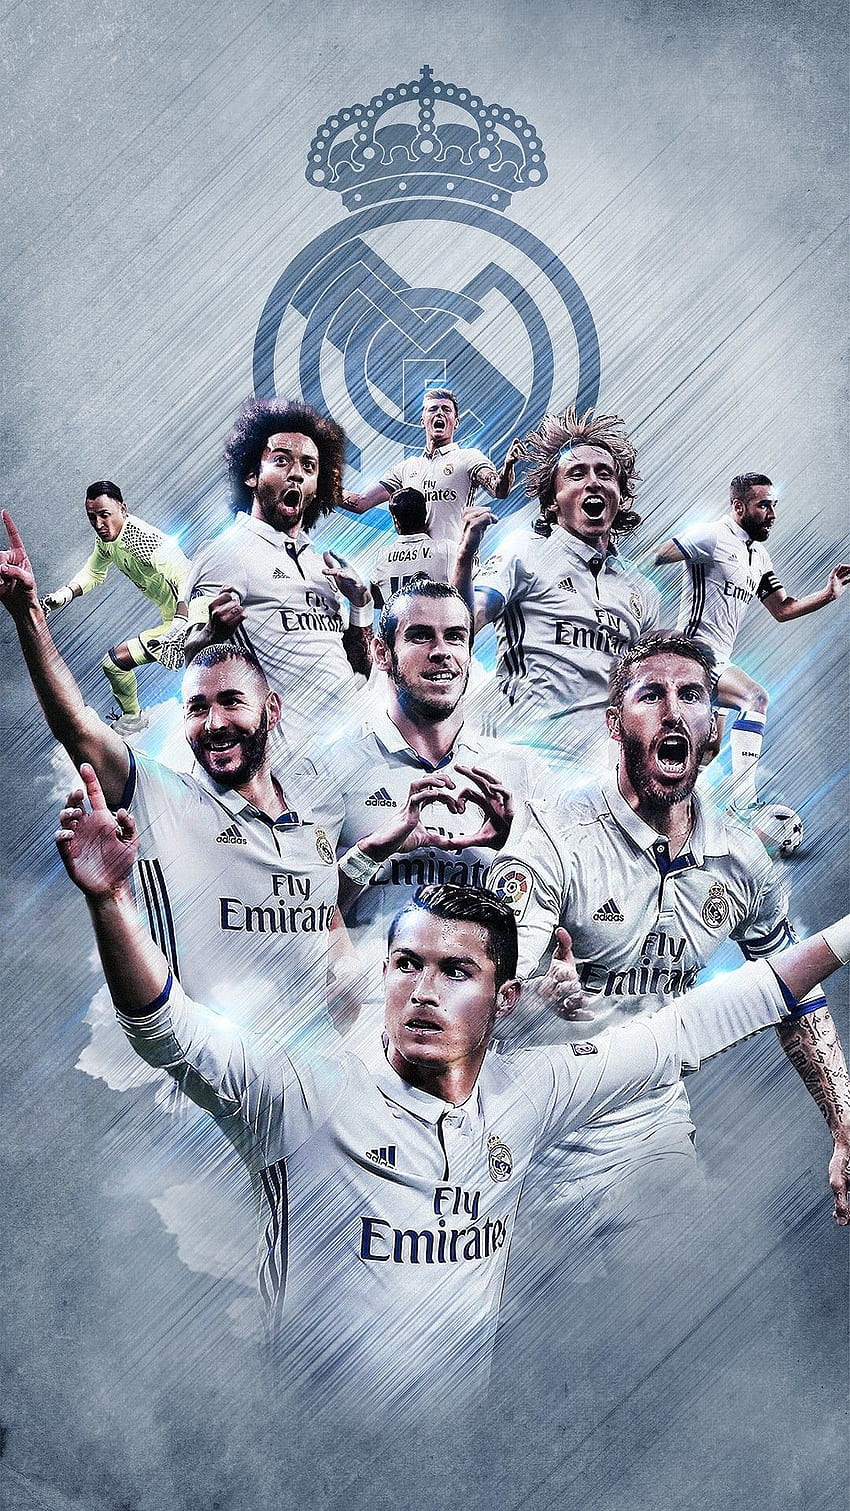 Các cầu thủ Real Madrid - là những chuyên gia trong lĩnh vực này. Bạn sẽ được ngắm nhìn những bức ảnh tuyệt đẹp của các cầu thủ Real Madrid và hiểu rõ hơn về đội bóng này.